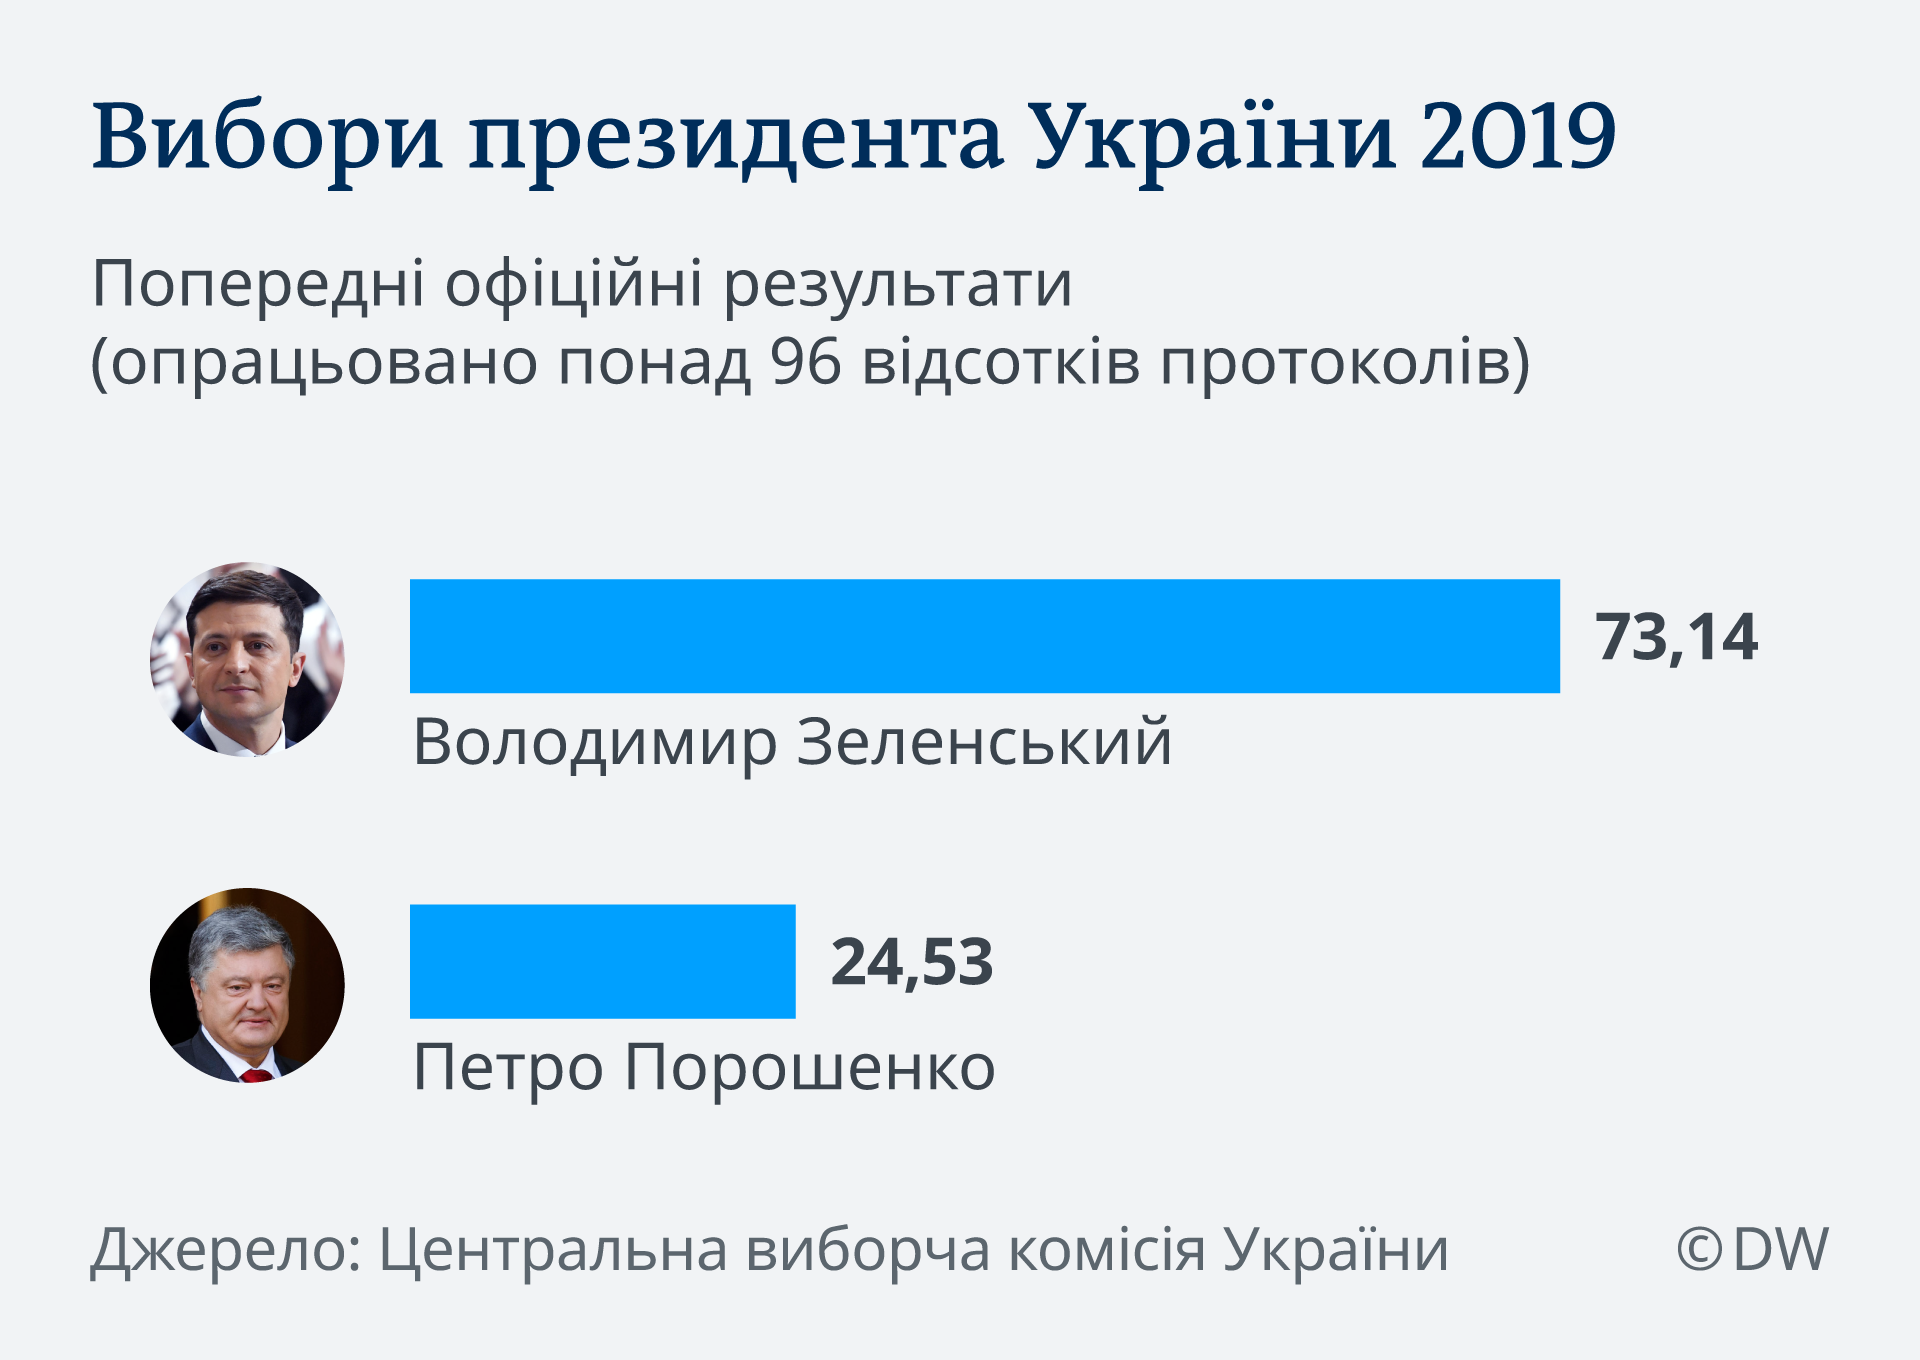 інфогафік, попередні результати виборів президента України